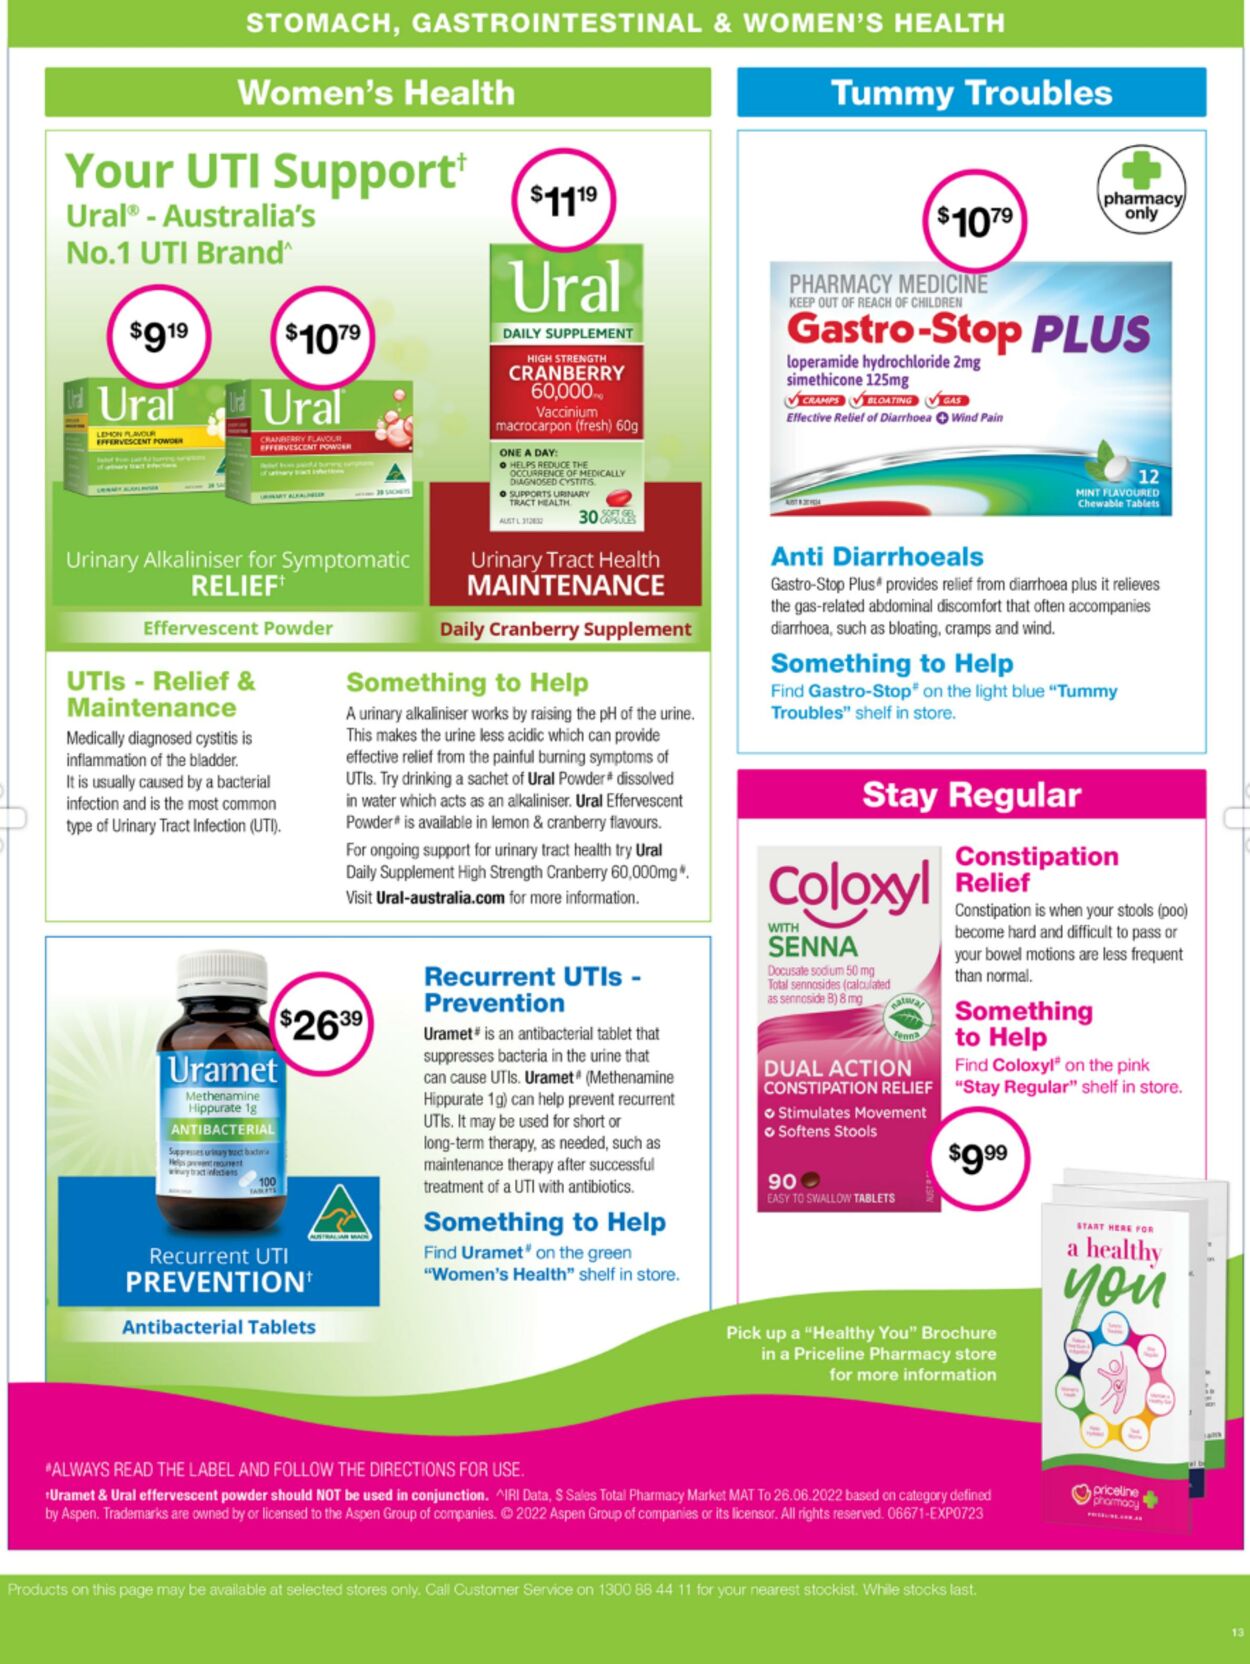 Catalogue Priceline Pharmacy 01.09.2022 - 14.09.2022